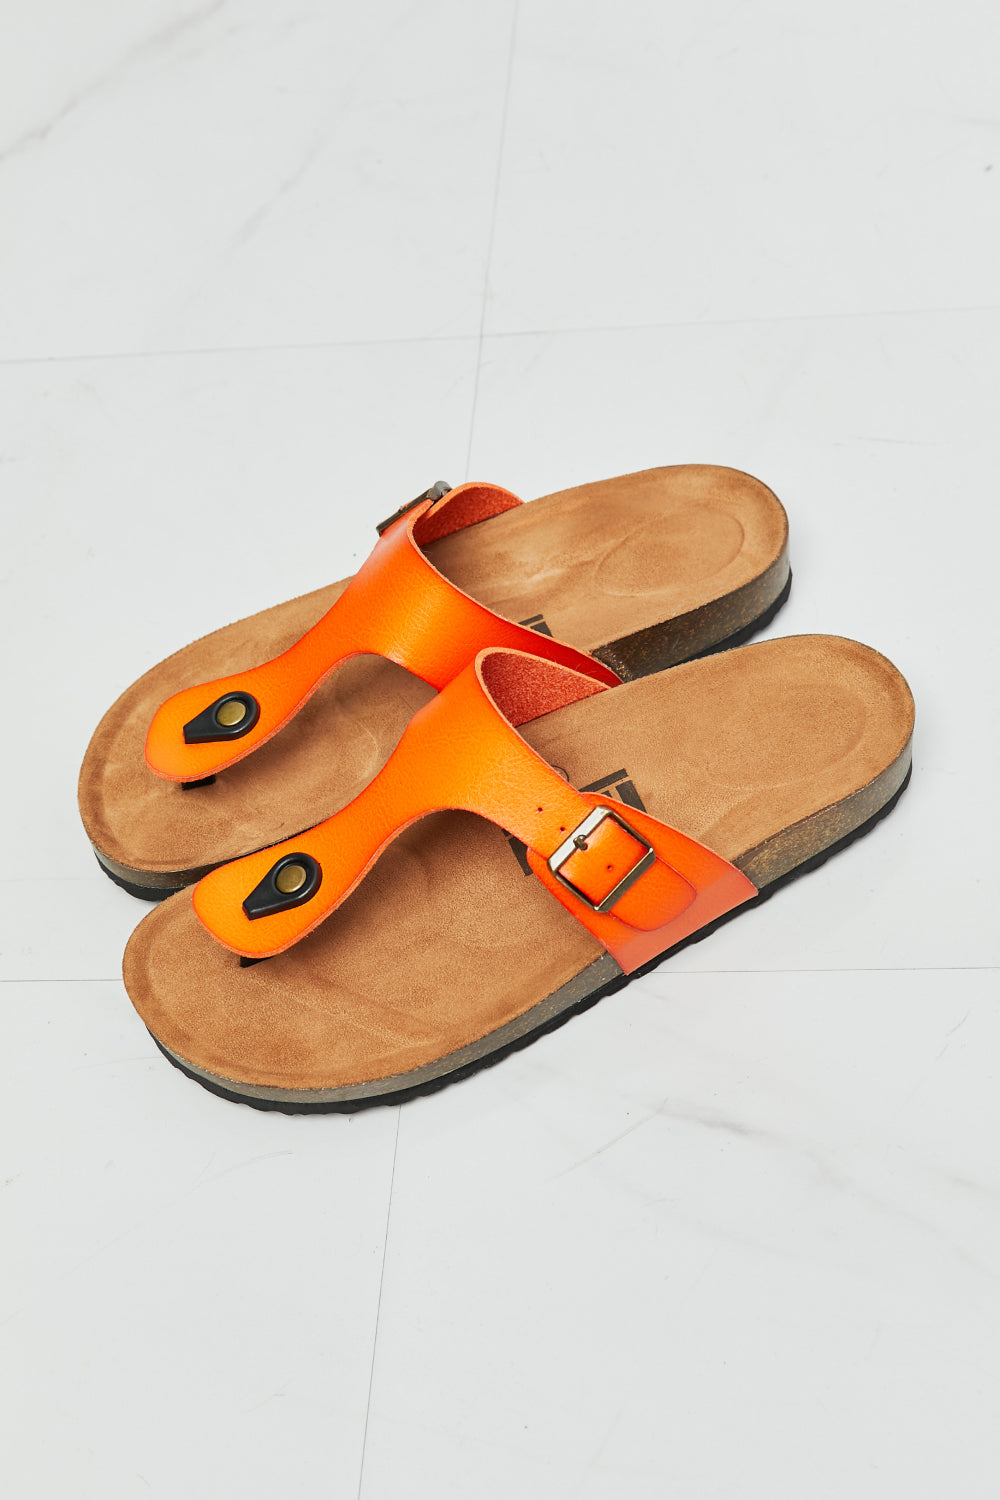 MMShoes Drift Away T-Strap Flip-Flop in Orange - nailedmoms